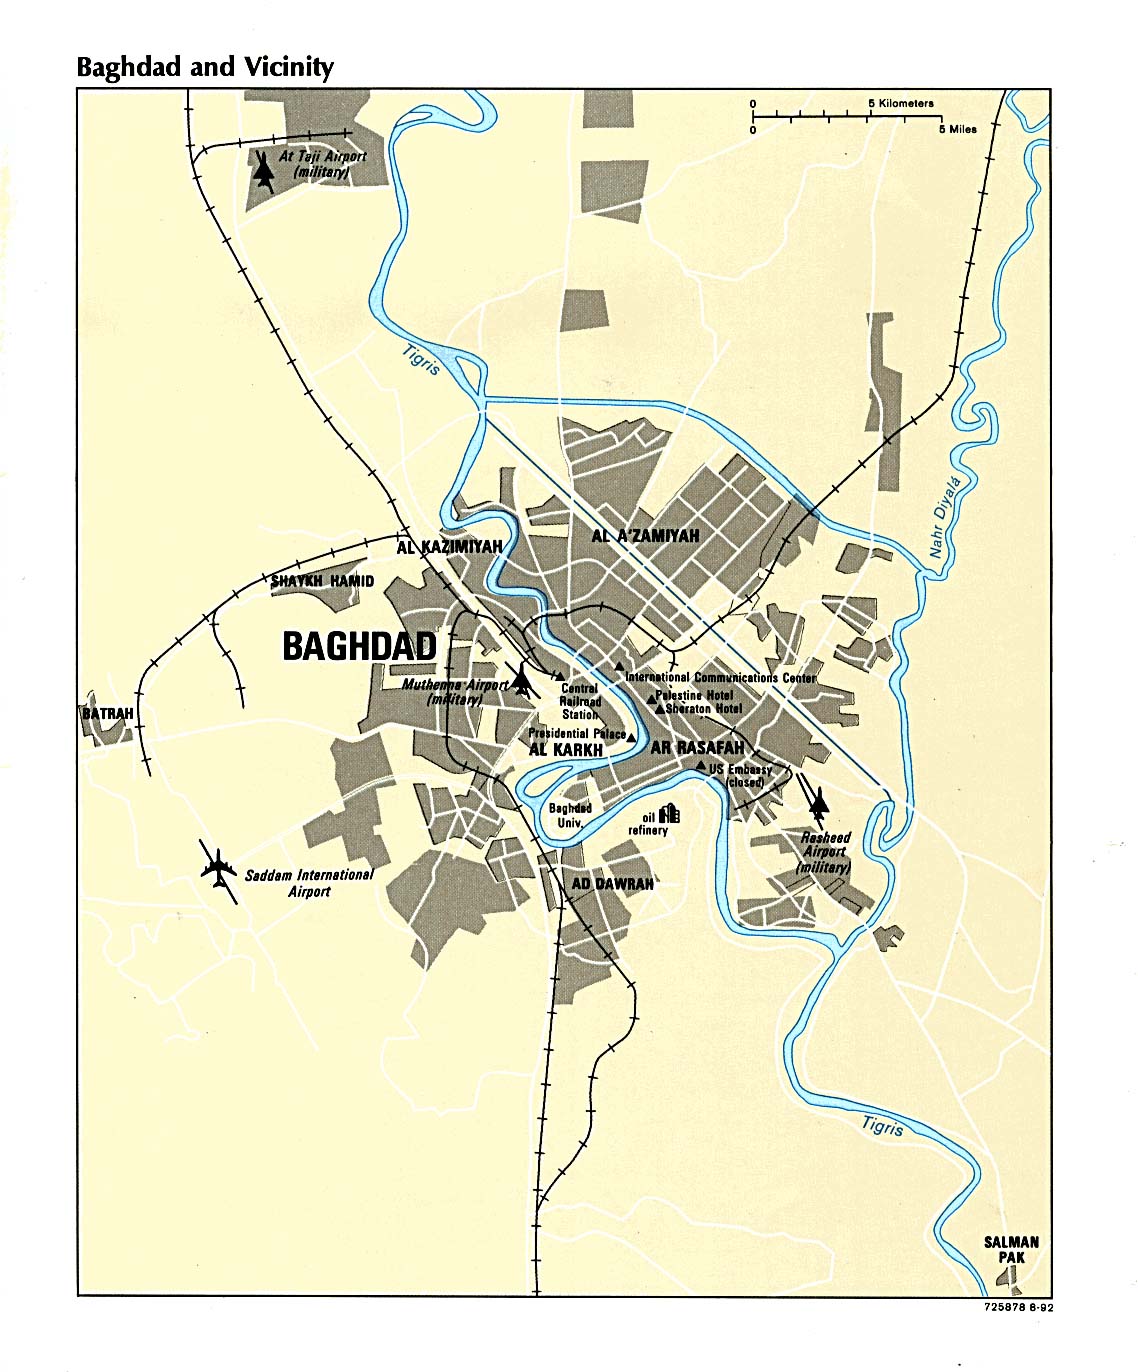 Bagdadkarte von 1992 / map of Baghdad from 1992